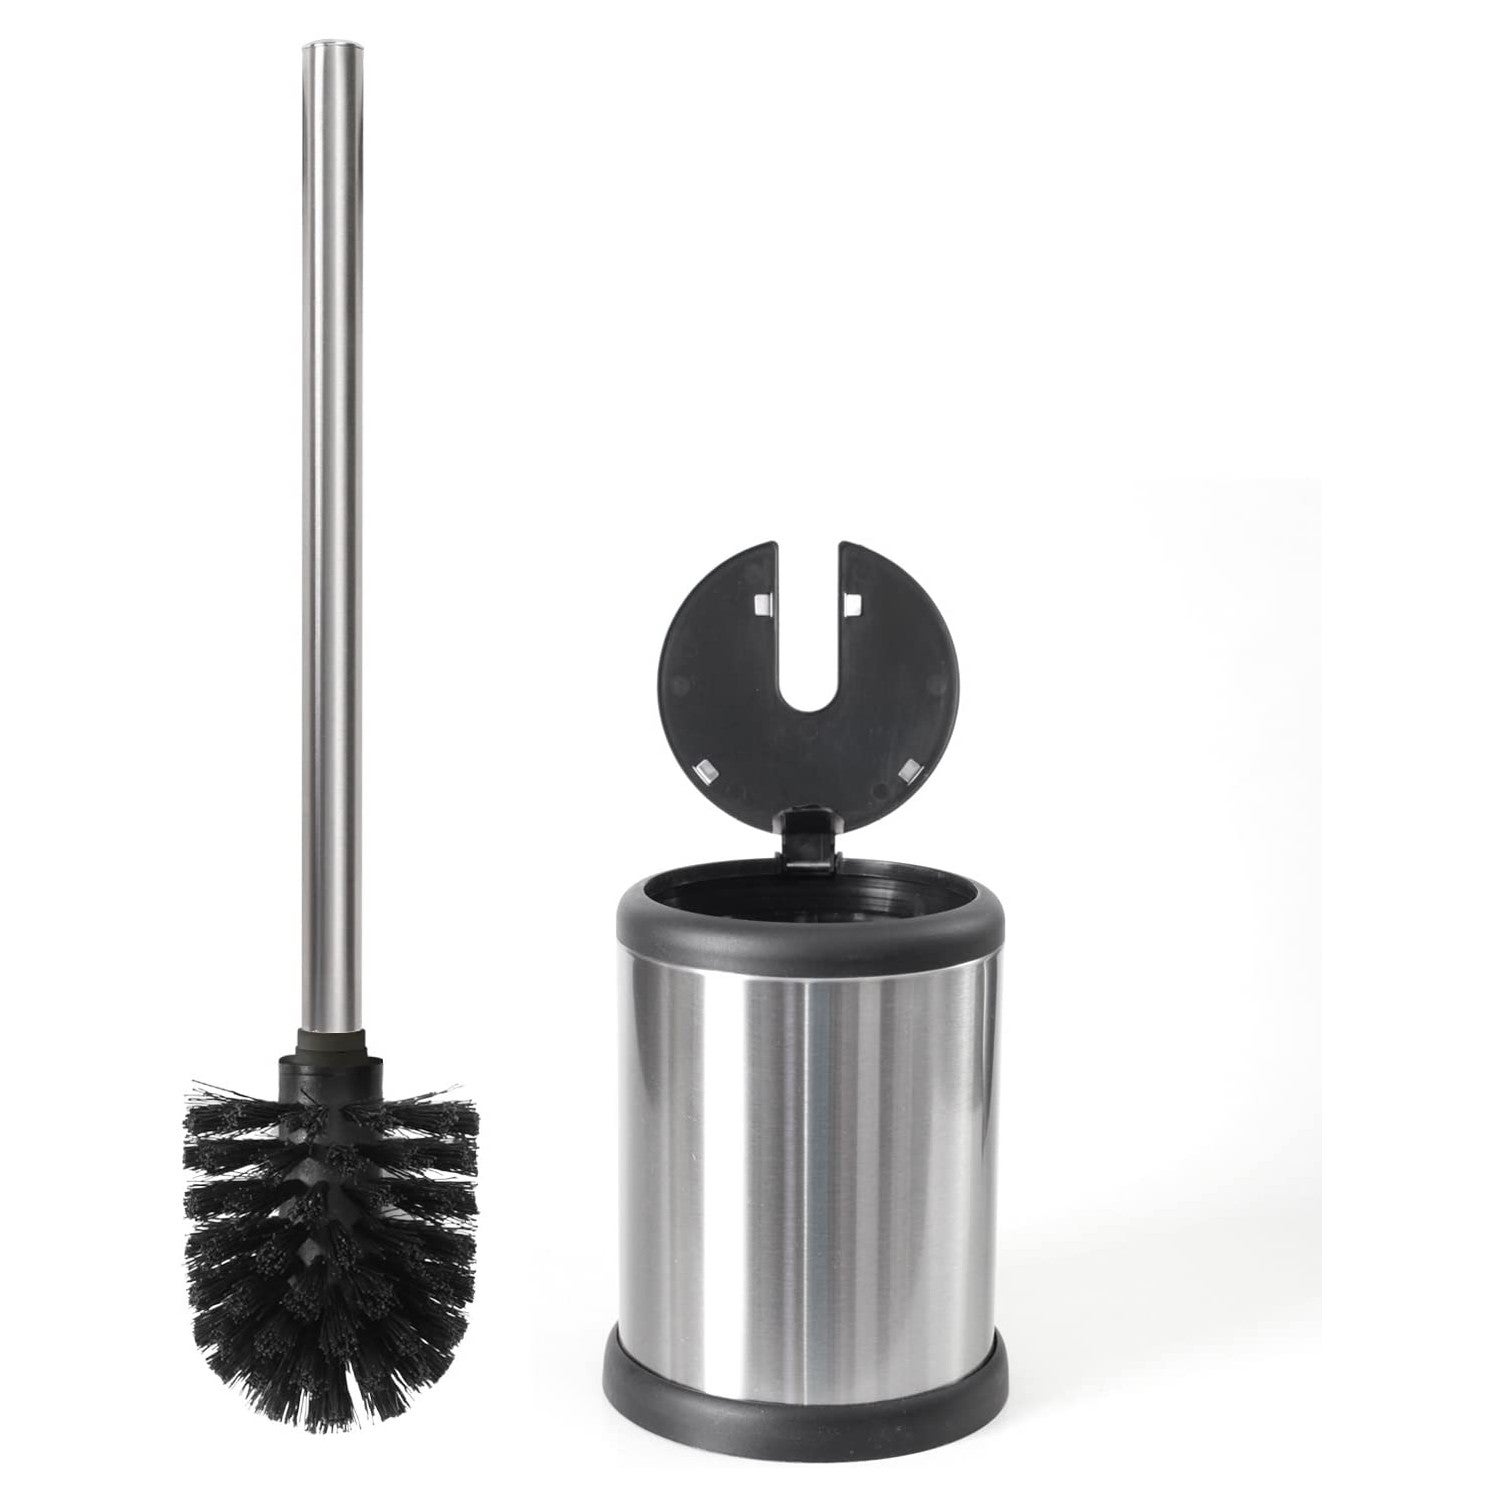 Modern Loo Brush Hygienic /& High-Quality Toilet Brush with Toilet Brush Holder Black mDesign Plastic Toilet Brush Set